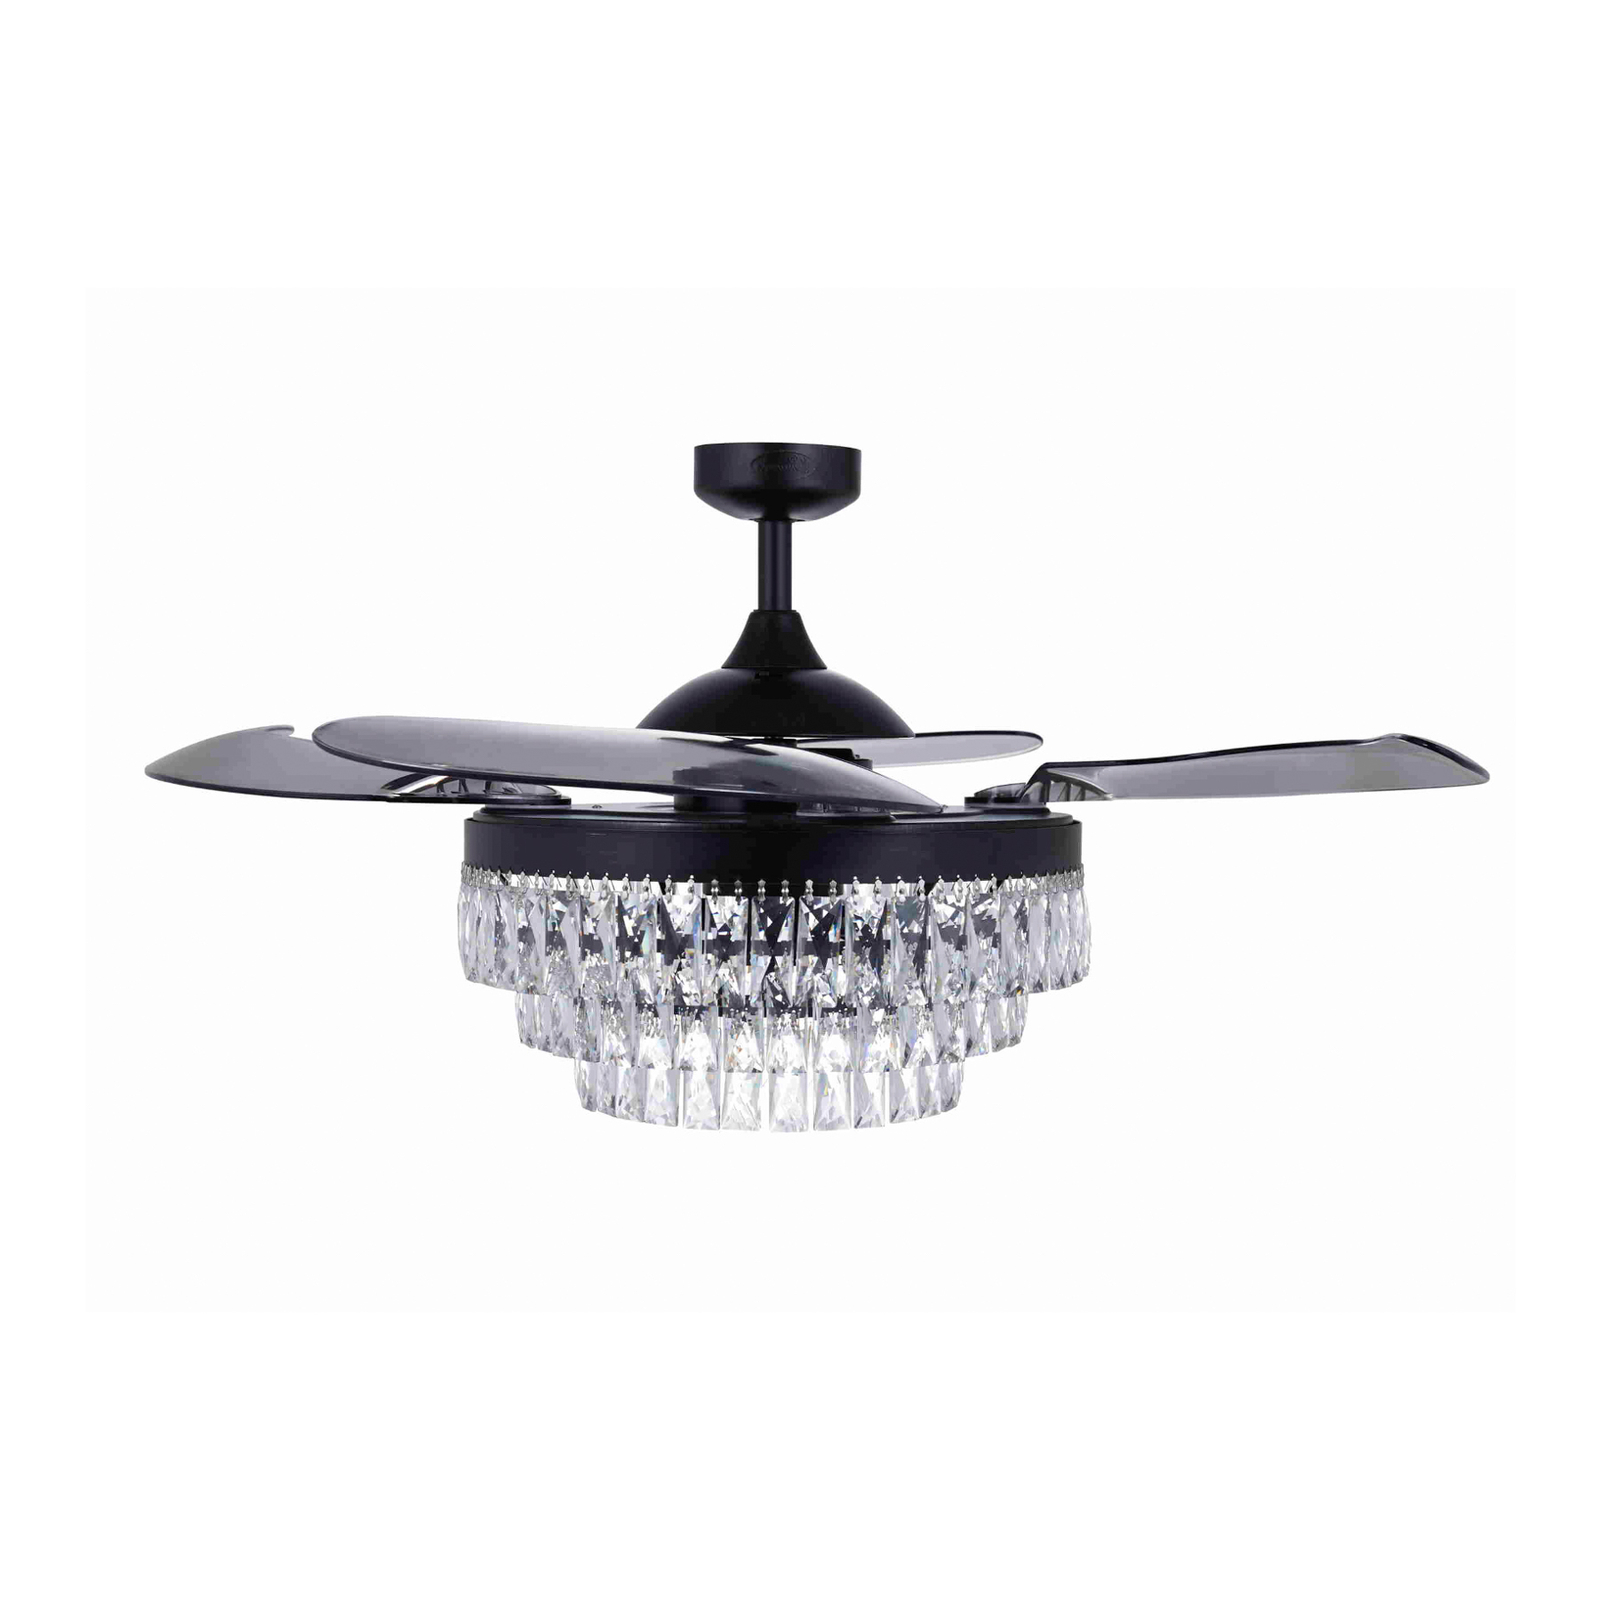 Beacon ceiling fan with light Fanaway Veil black silent